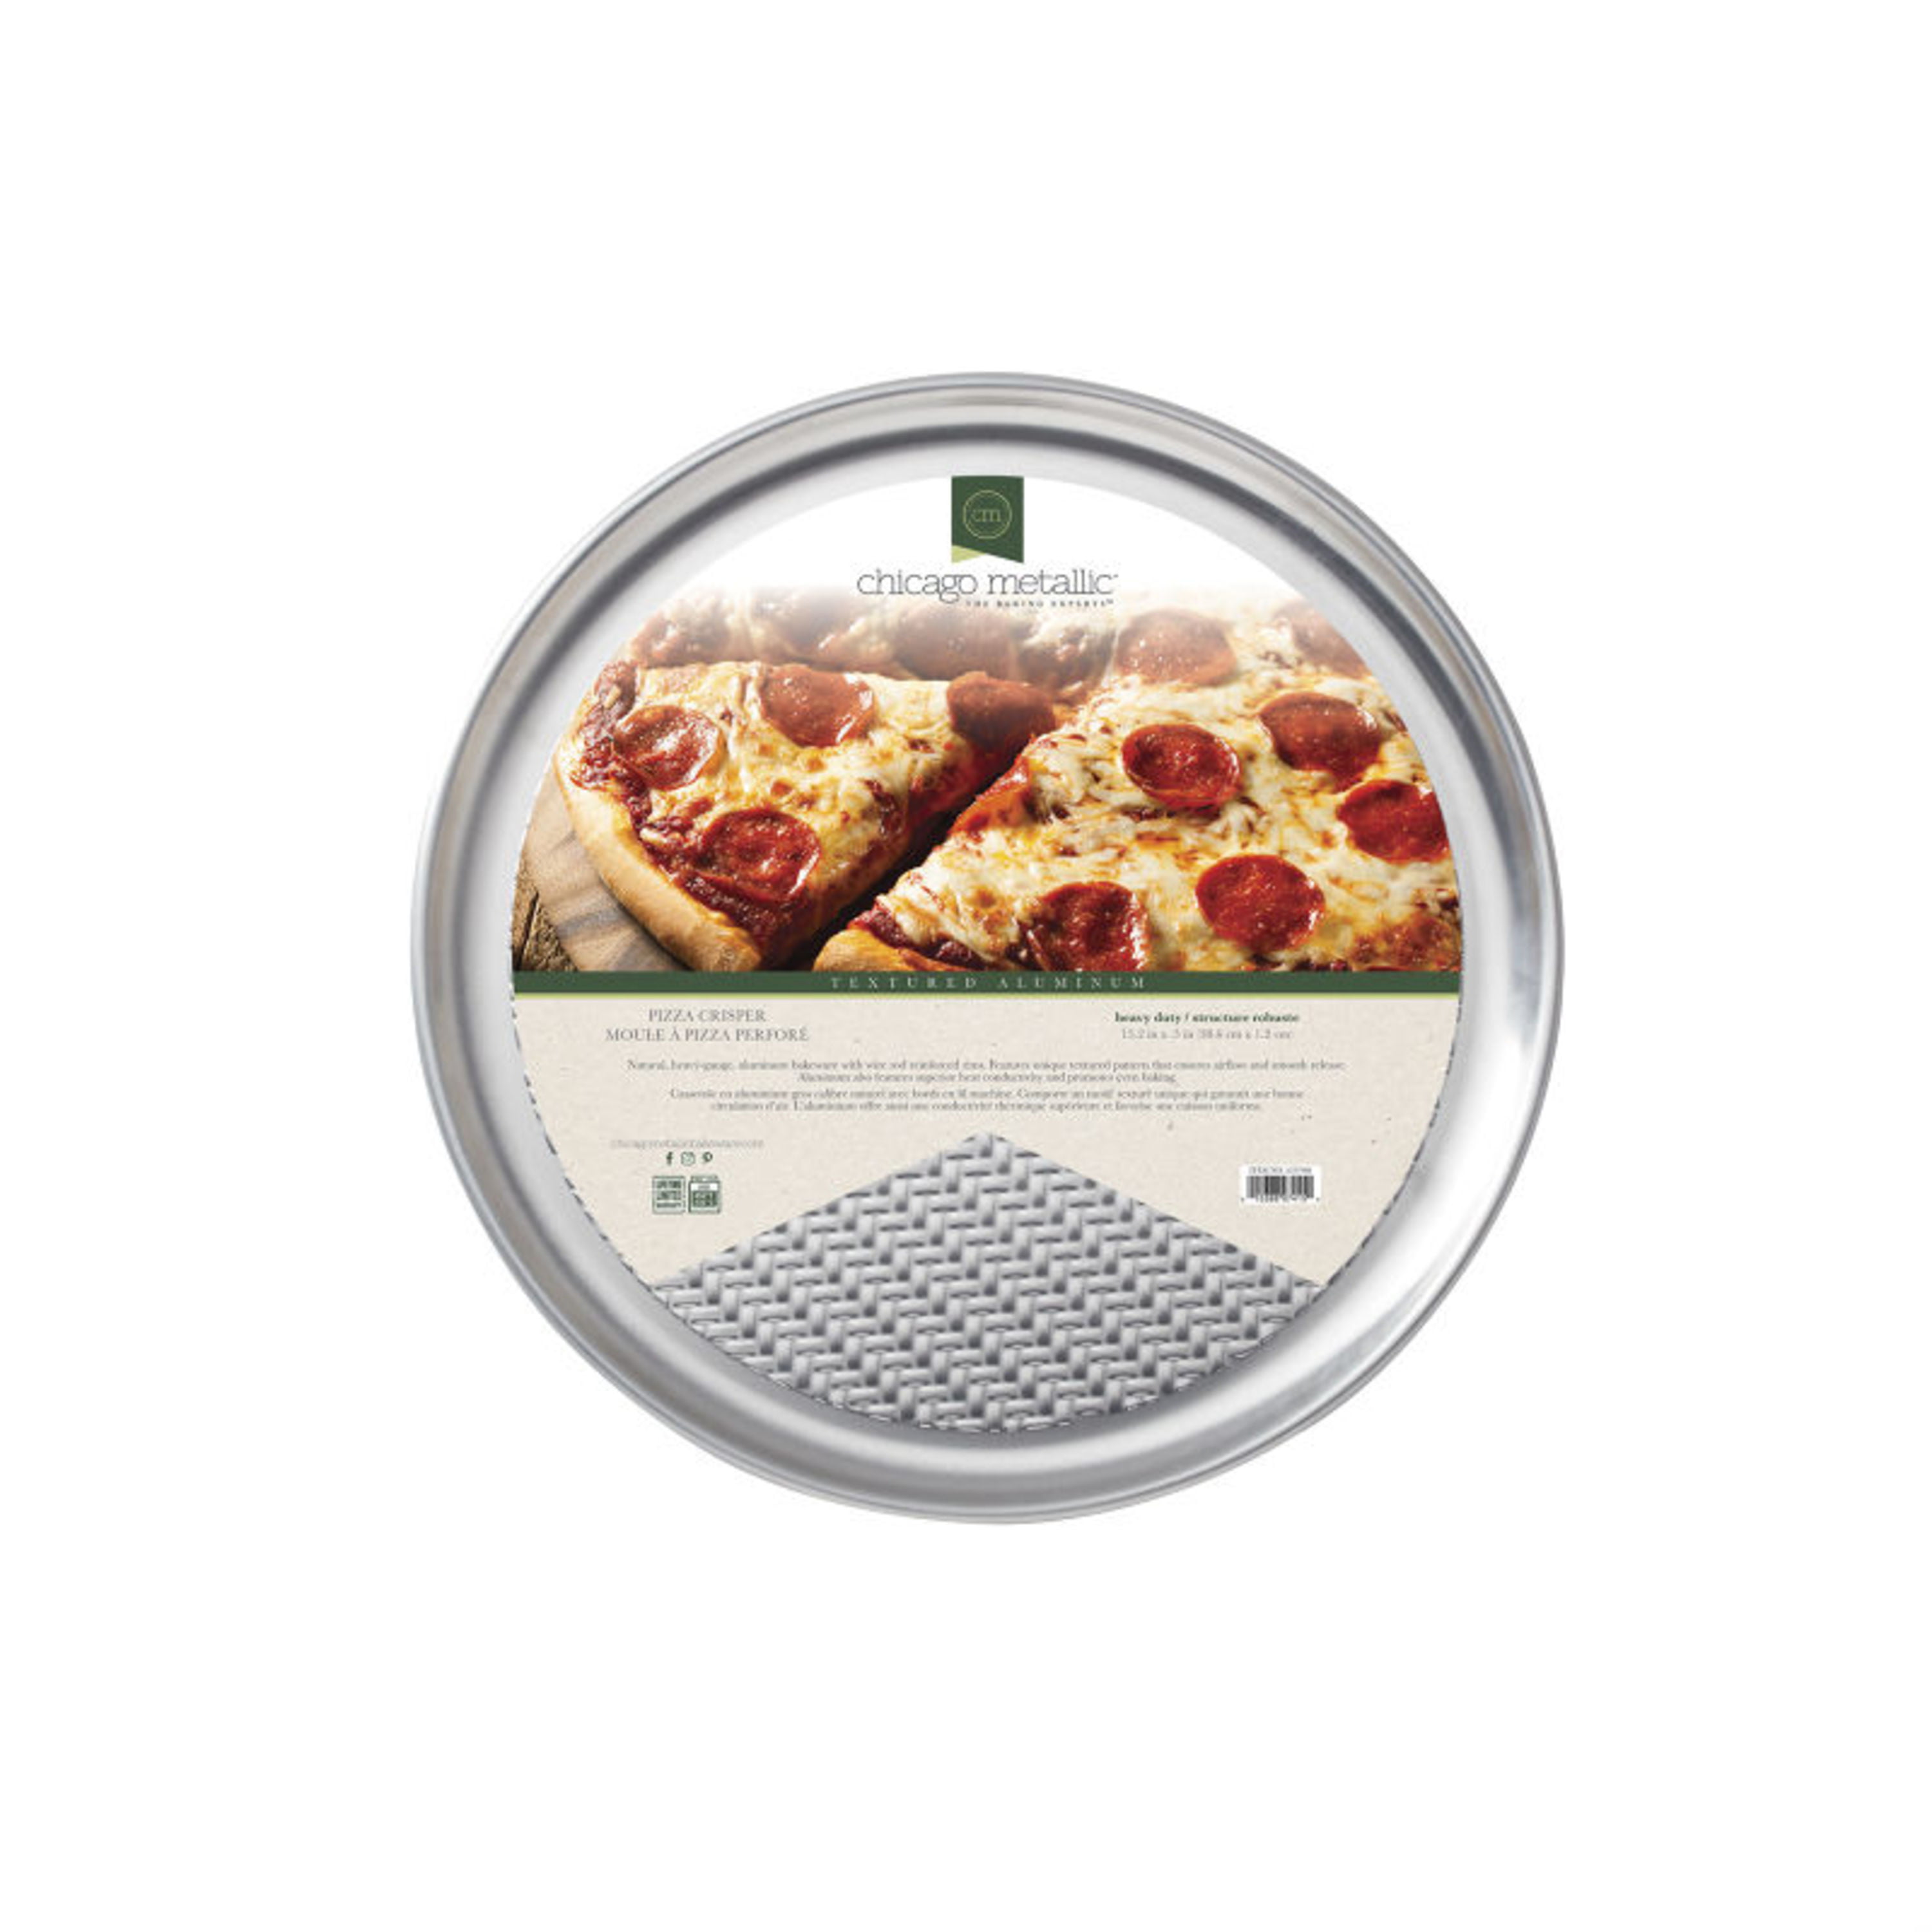 MÅNTAGG Pizza crisper pan, non-stick coating dark gray, 15 - IKEA